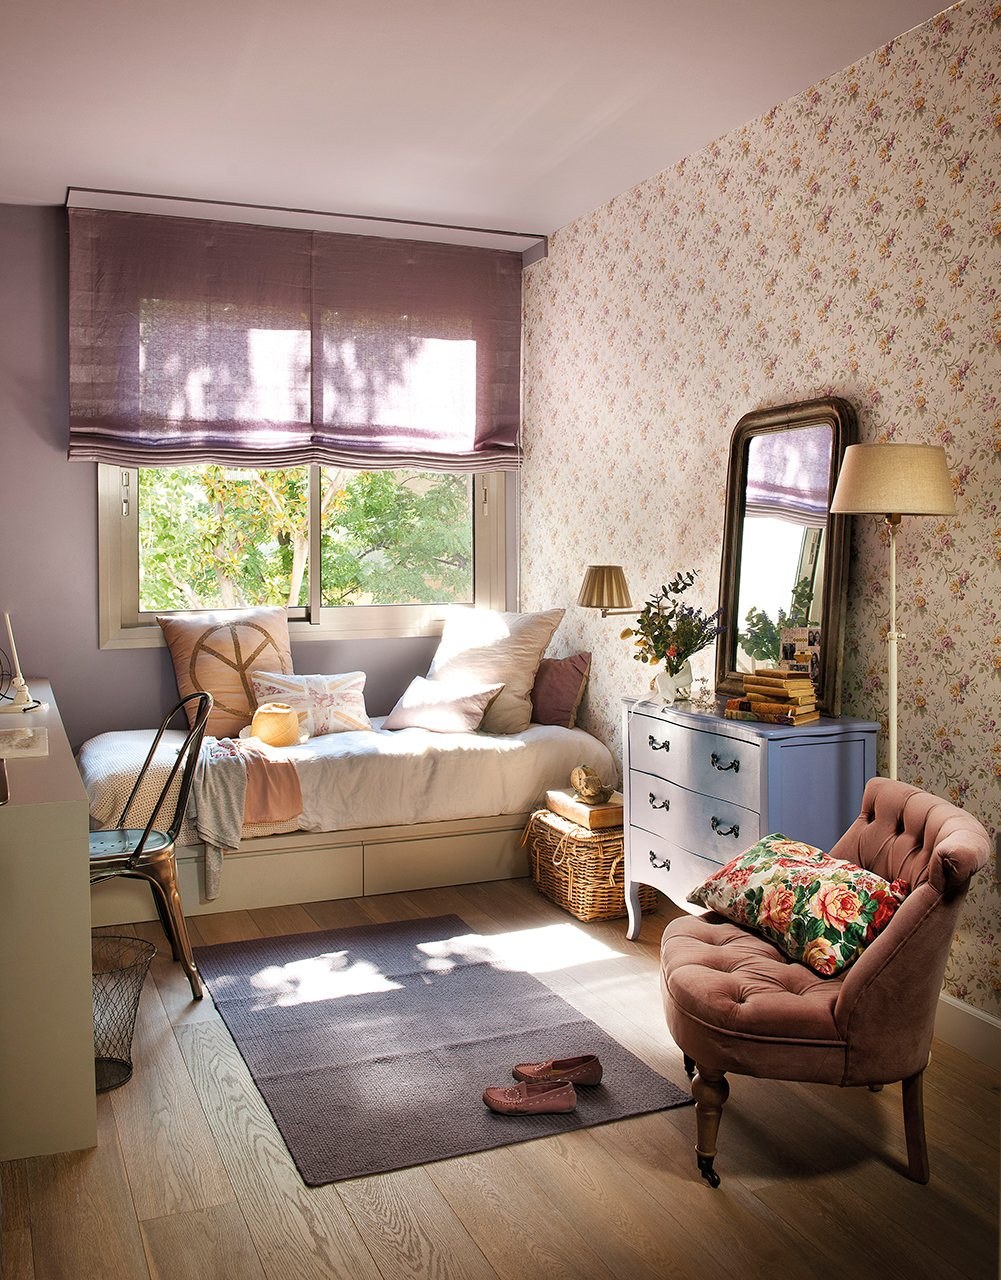 Сделать маленькую квартиру уютной. Уютный интерьер квартиры. Маленькие уютные квартиры. Уютный интерьер комнаты. Маленькие уютные квартиры интерьер.